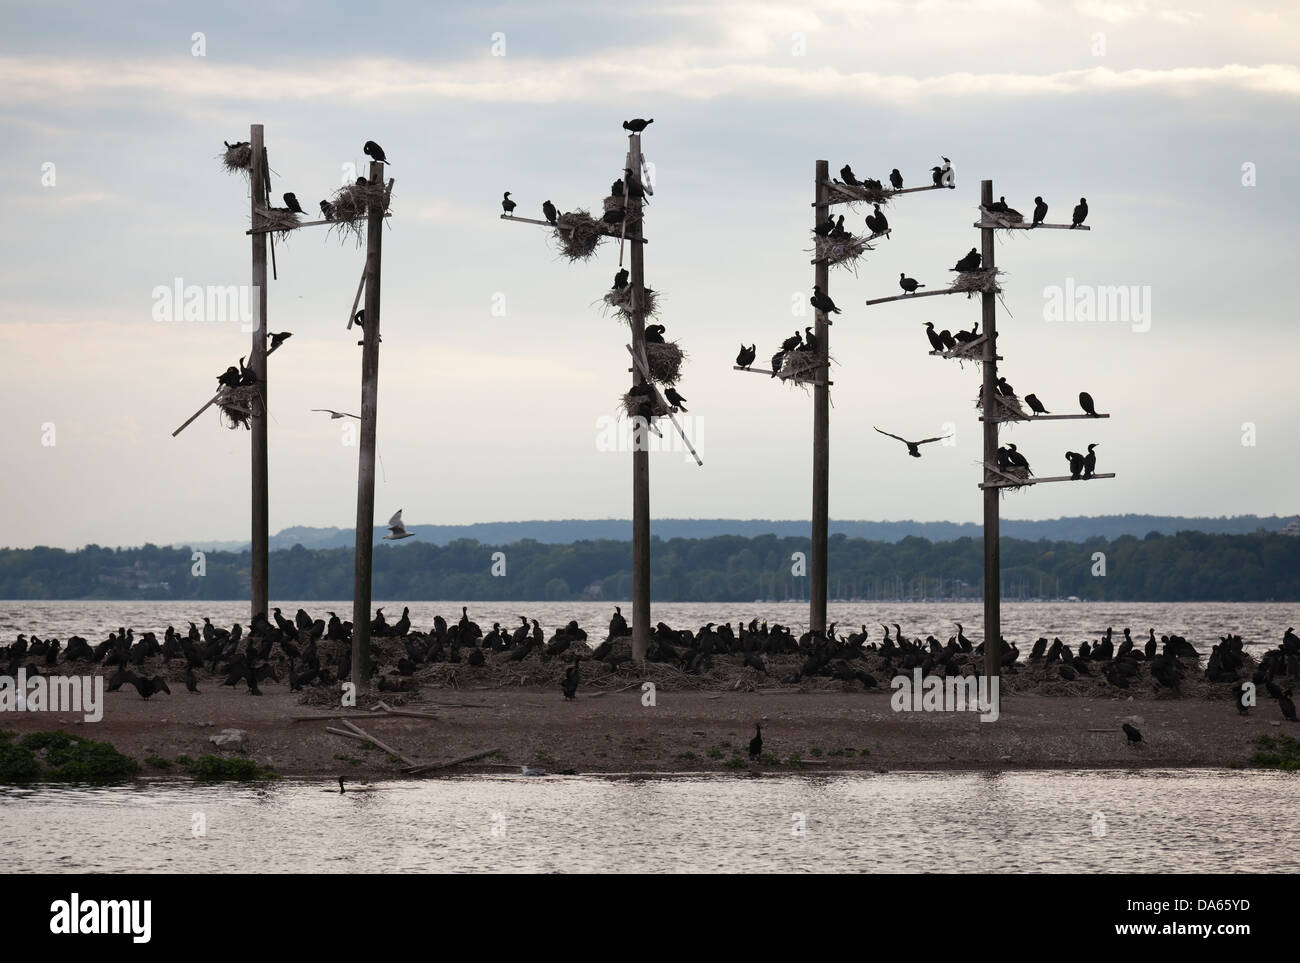 Decenas de cormoranes, hacerse cargo de una pequeña isla, Hamilton, Ontario, Canadá Foto de stock